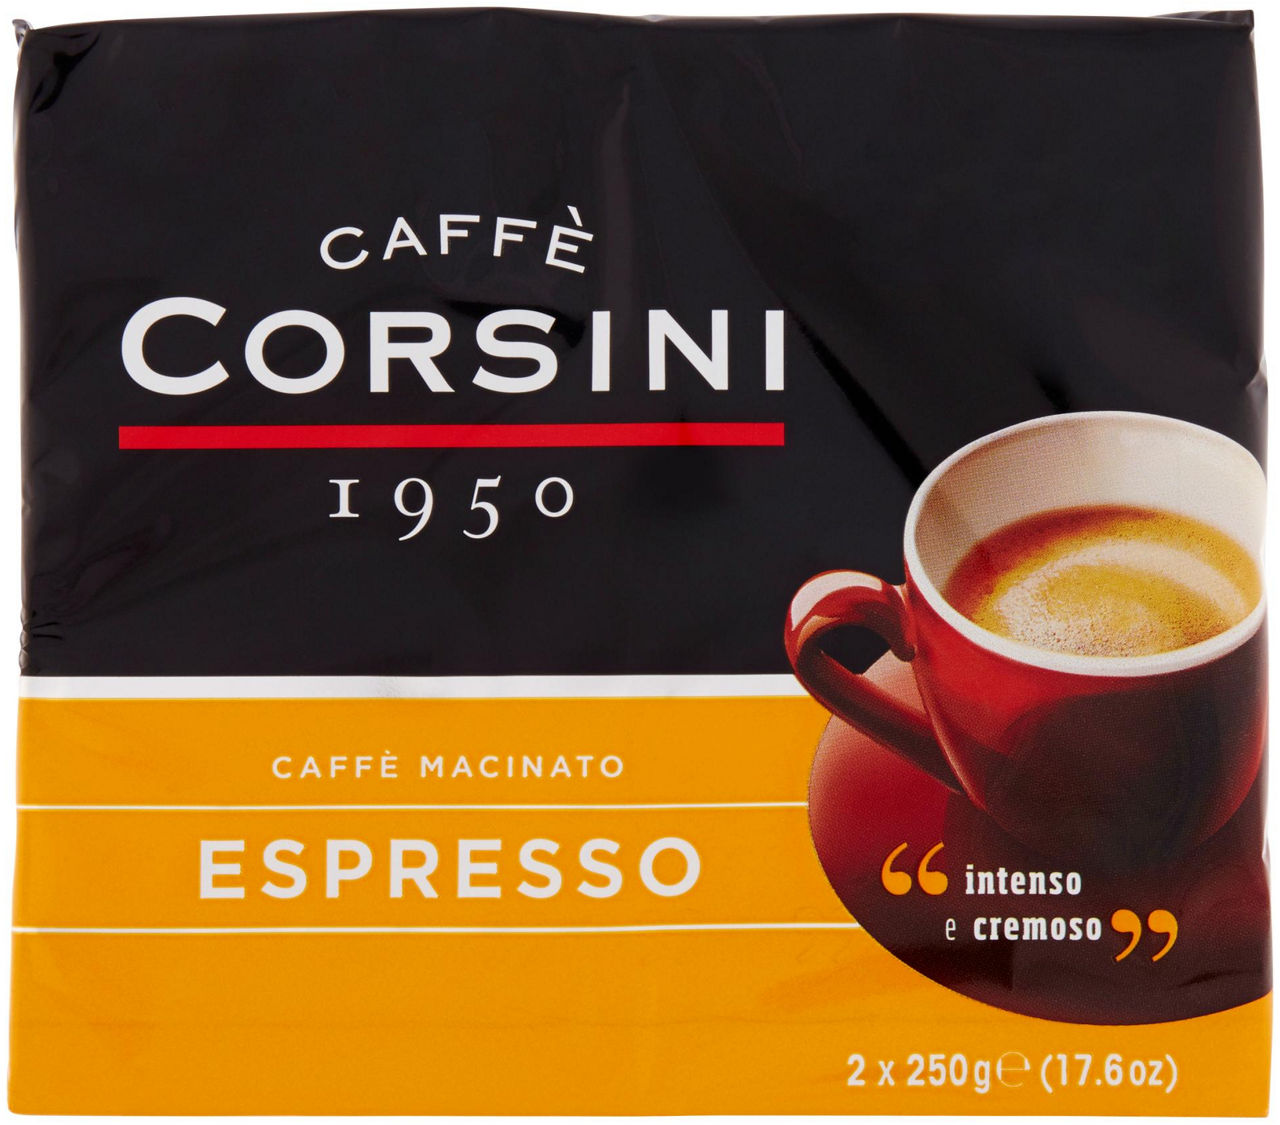 CAFFE' CORSINI ESPRESSO CASA BIPACK SACCHETTO GR. 250X2 - 0